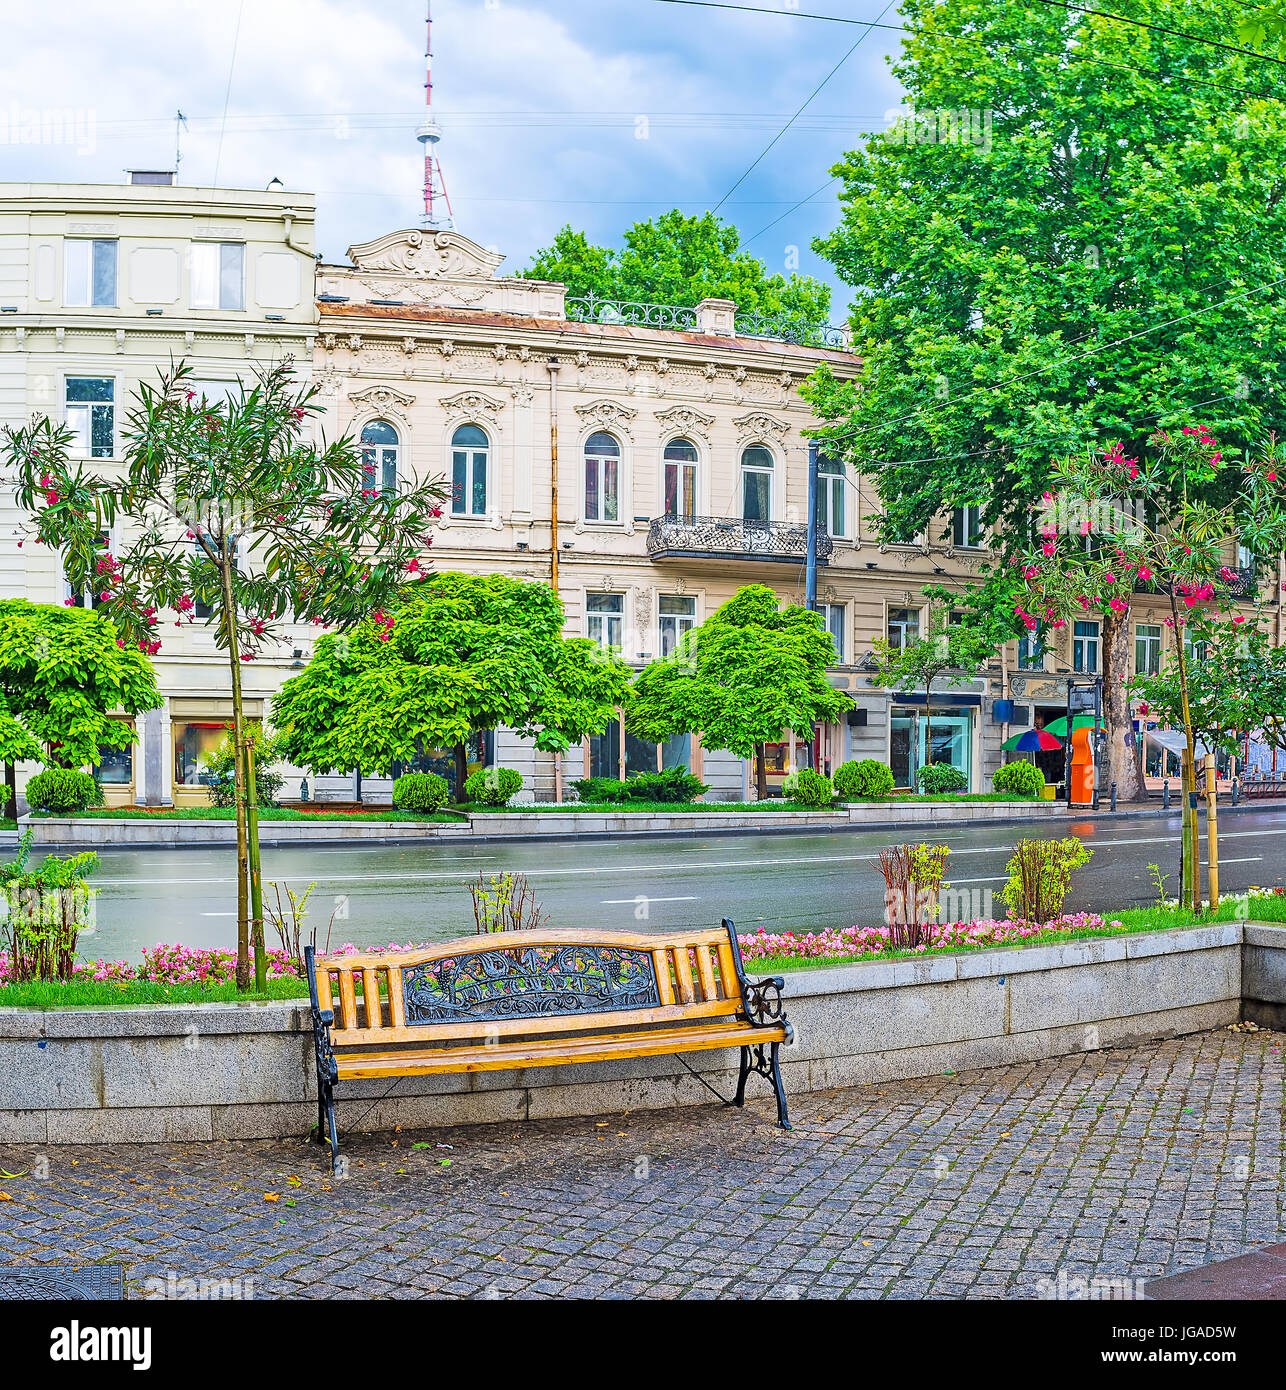 La saison des pluies l'avenue rustaveli avec lonely banc, entouré de massifs de fleurs et arbres en fleurs, avec les édifices historiques sur l'arrière-plan, Tbilissi, Géorgie Banque D'Images